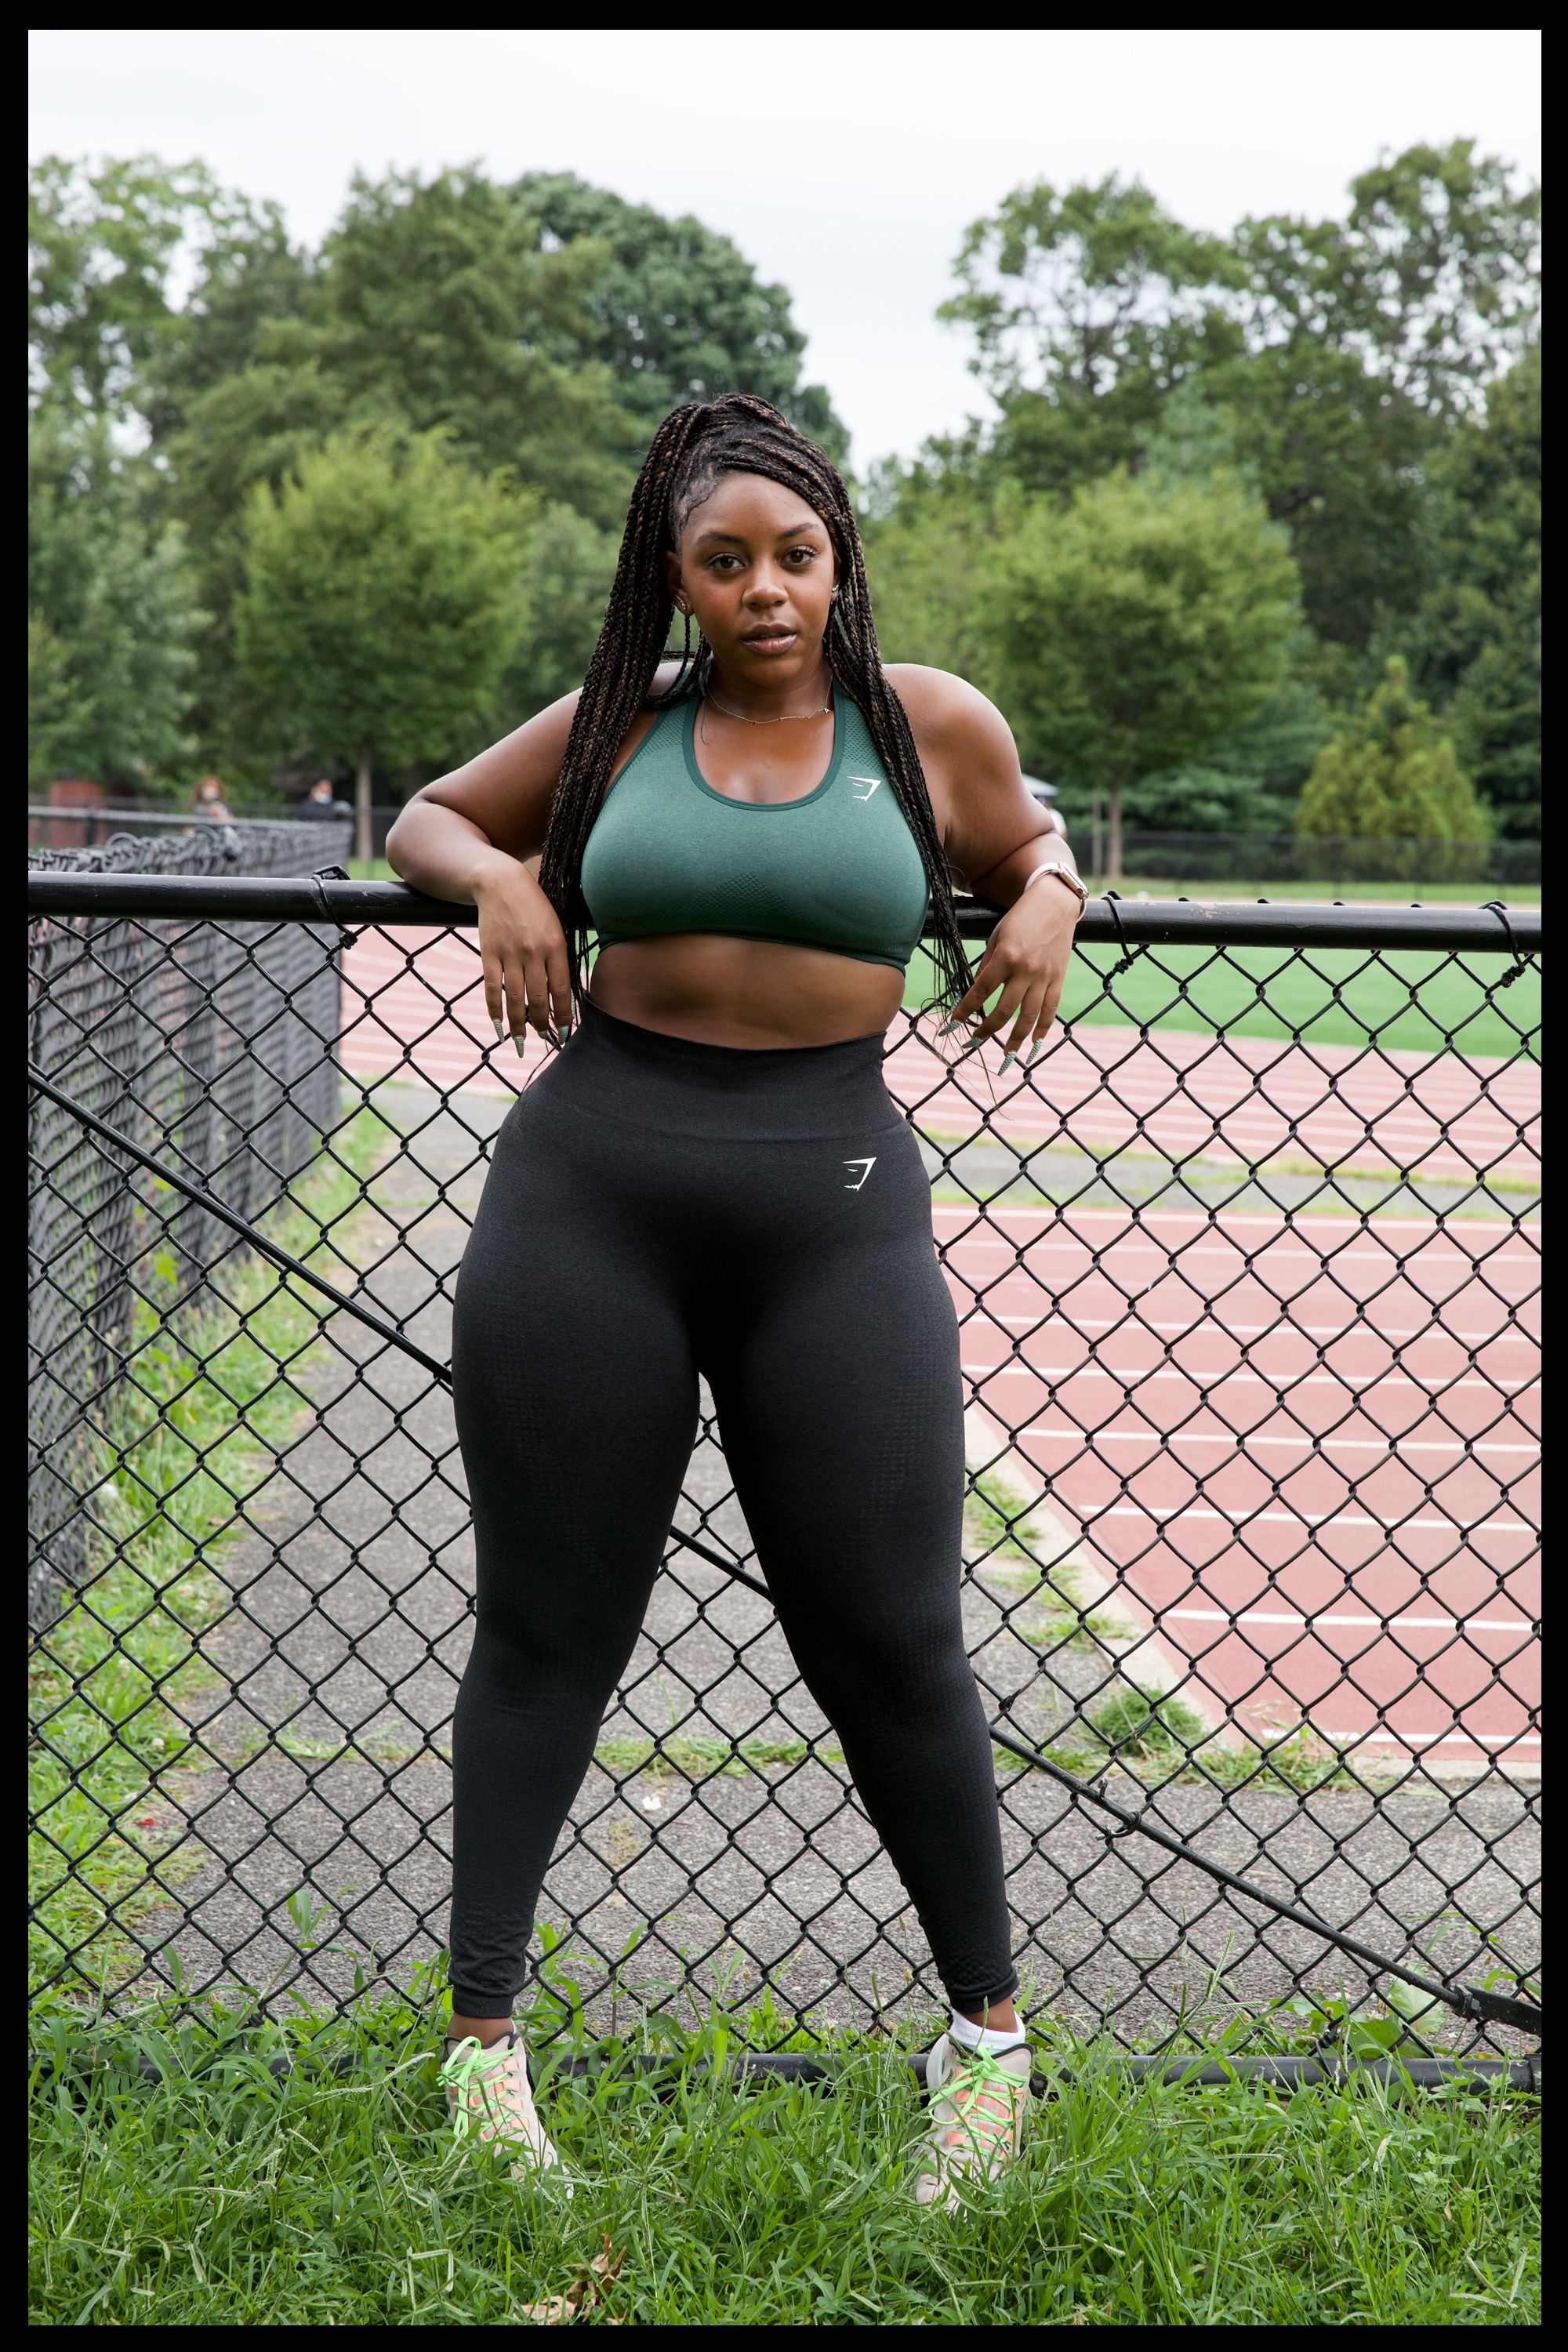 Women Gym Fitness Workout Sport Suit Leggings Shorts Top Vest Bra Pants Yoga Set 